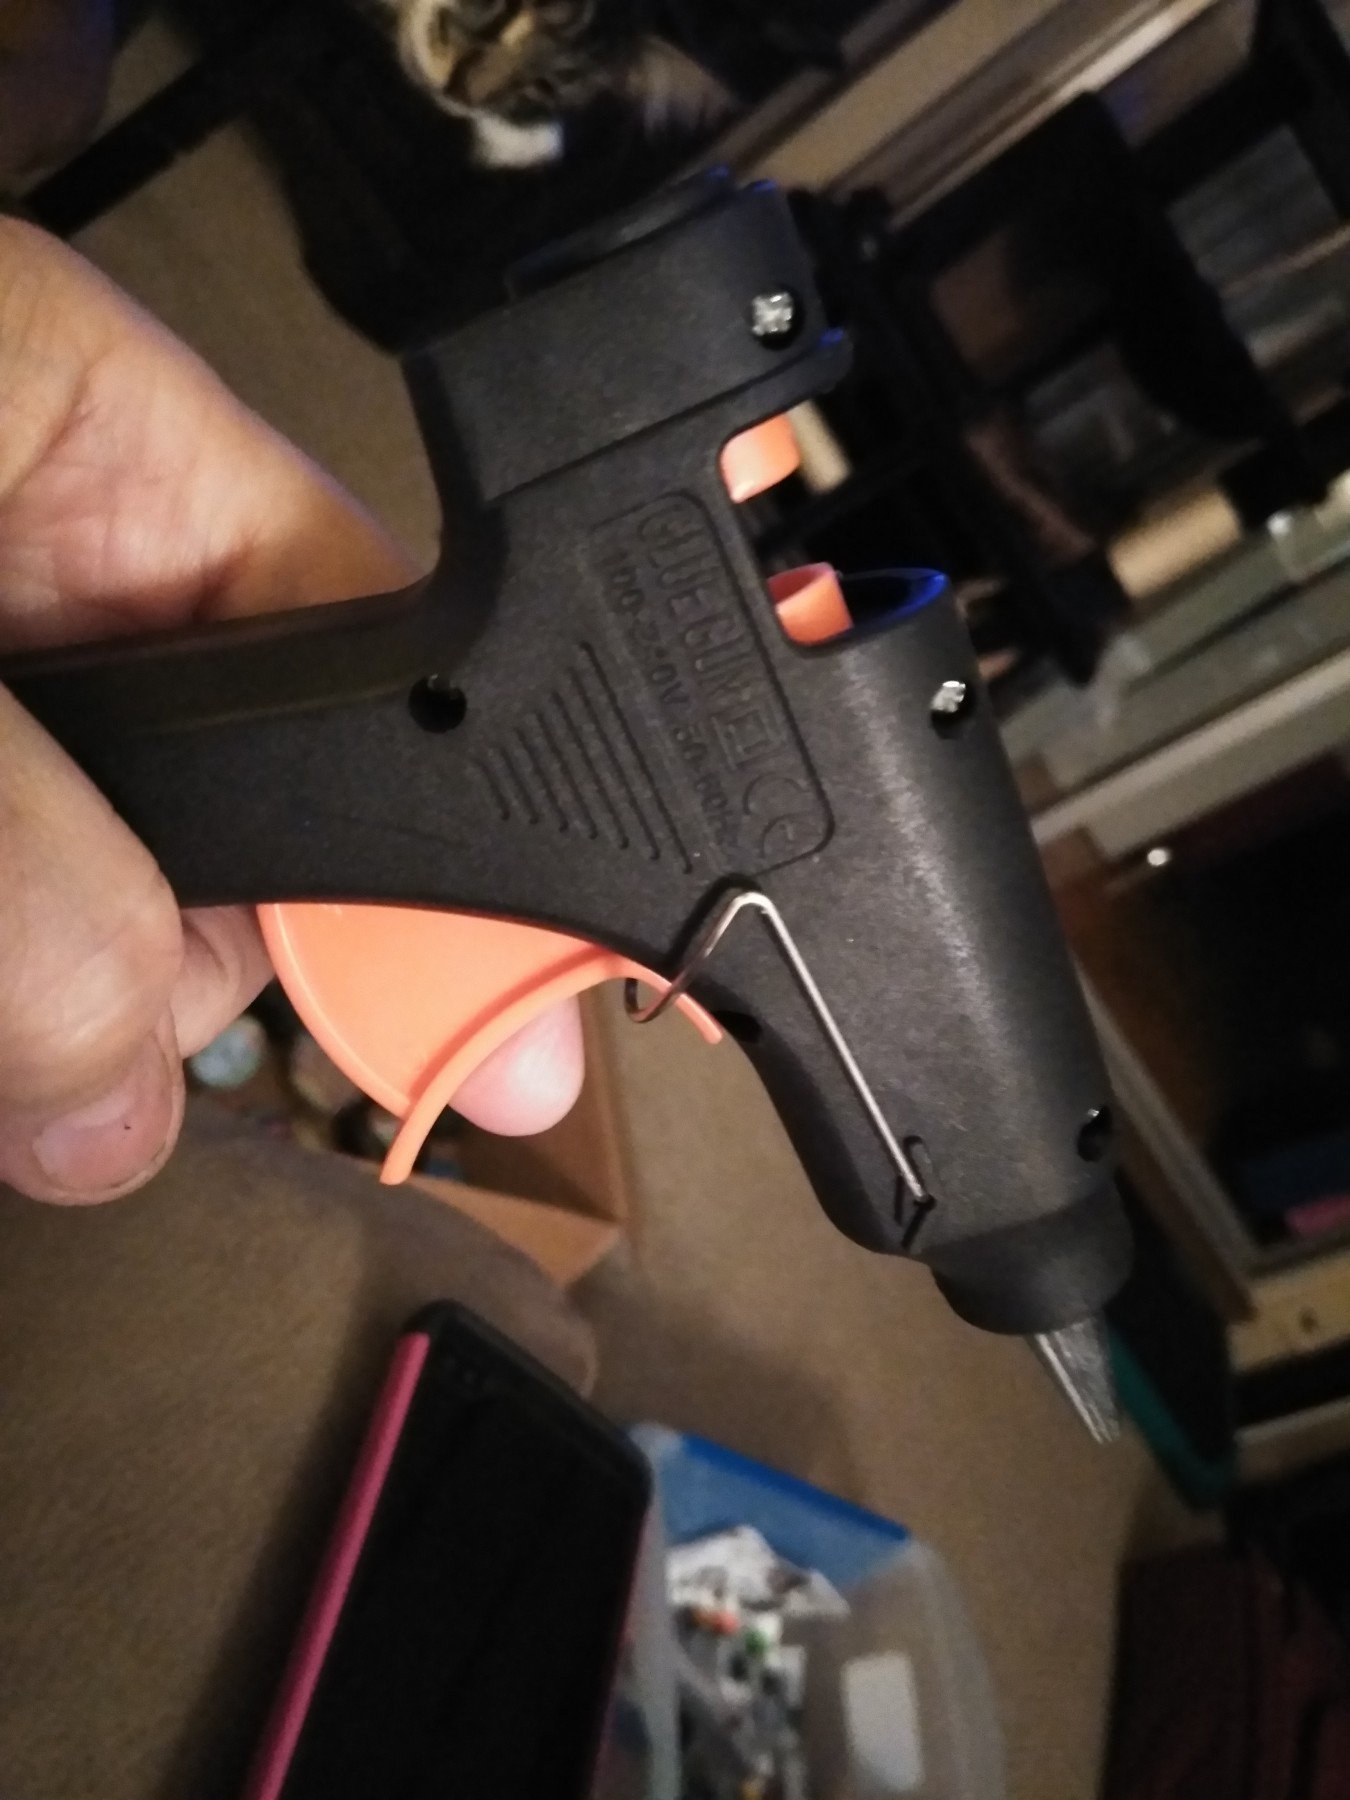 Hot glue gun with 50 mini glue sticks